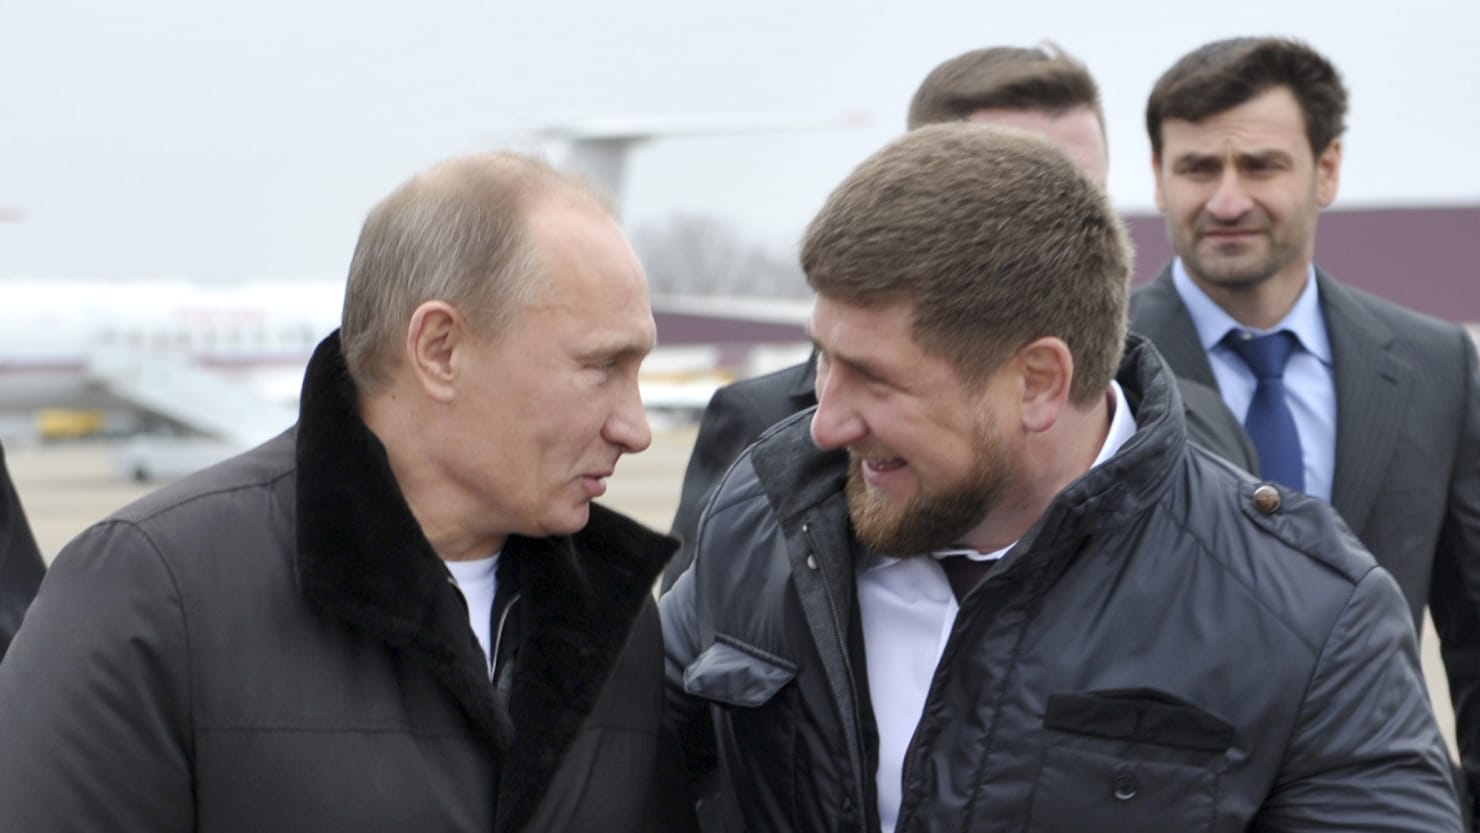 Ramsan Kadyrow, der tschetschenische Führer und Putin-Verbündete, soll sich in einem kritischen Zustand befinden